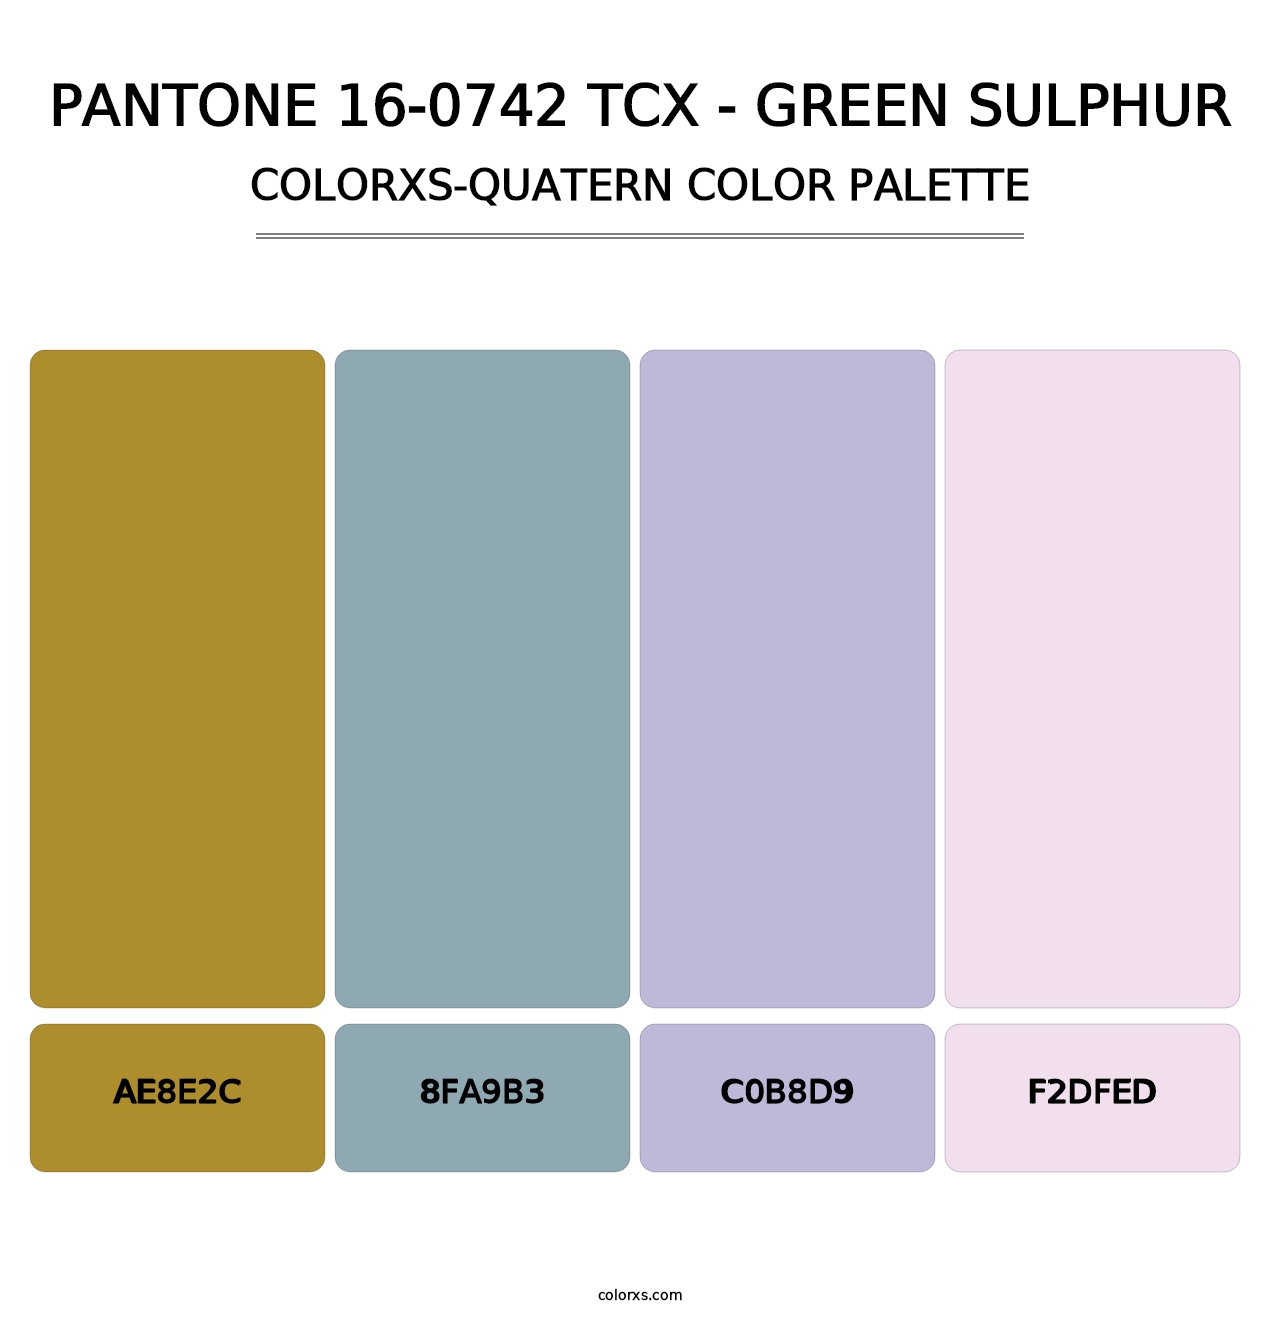 PANTONE 16-0742 TCX - Green Sulphur - Colorxs Quatern Palette